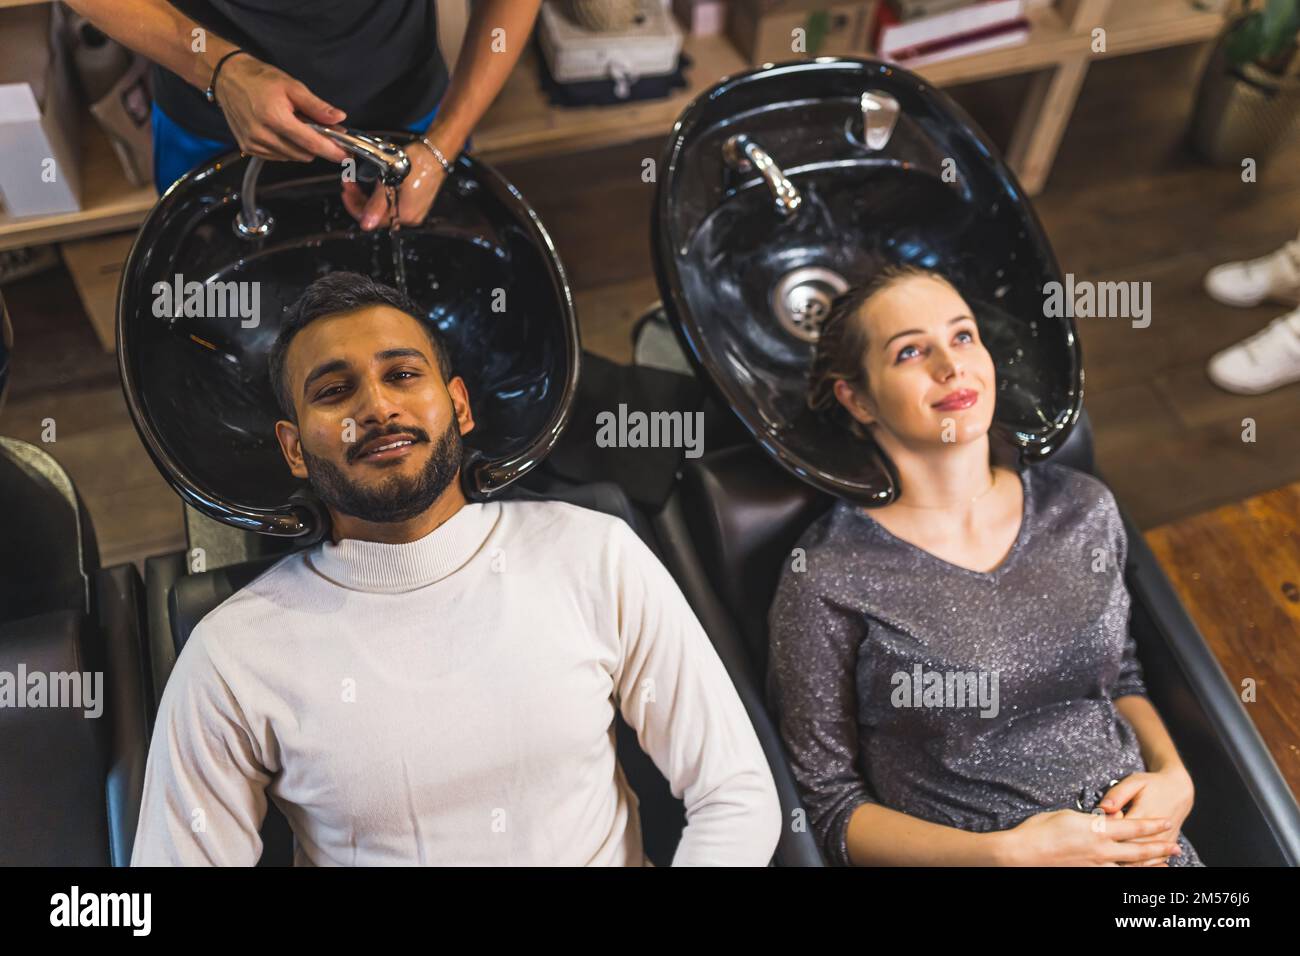 Lavage de cheveux au coiffeur - édition couple. Femme enceinte avec un  après-shampooing dans ses cheveux attendant que le coiffeur lave les  cheveux de son mari. Prise de vue en grand angle.